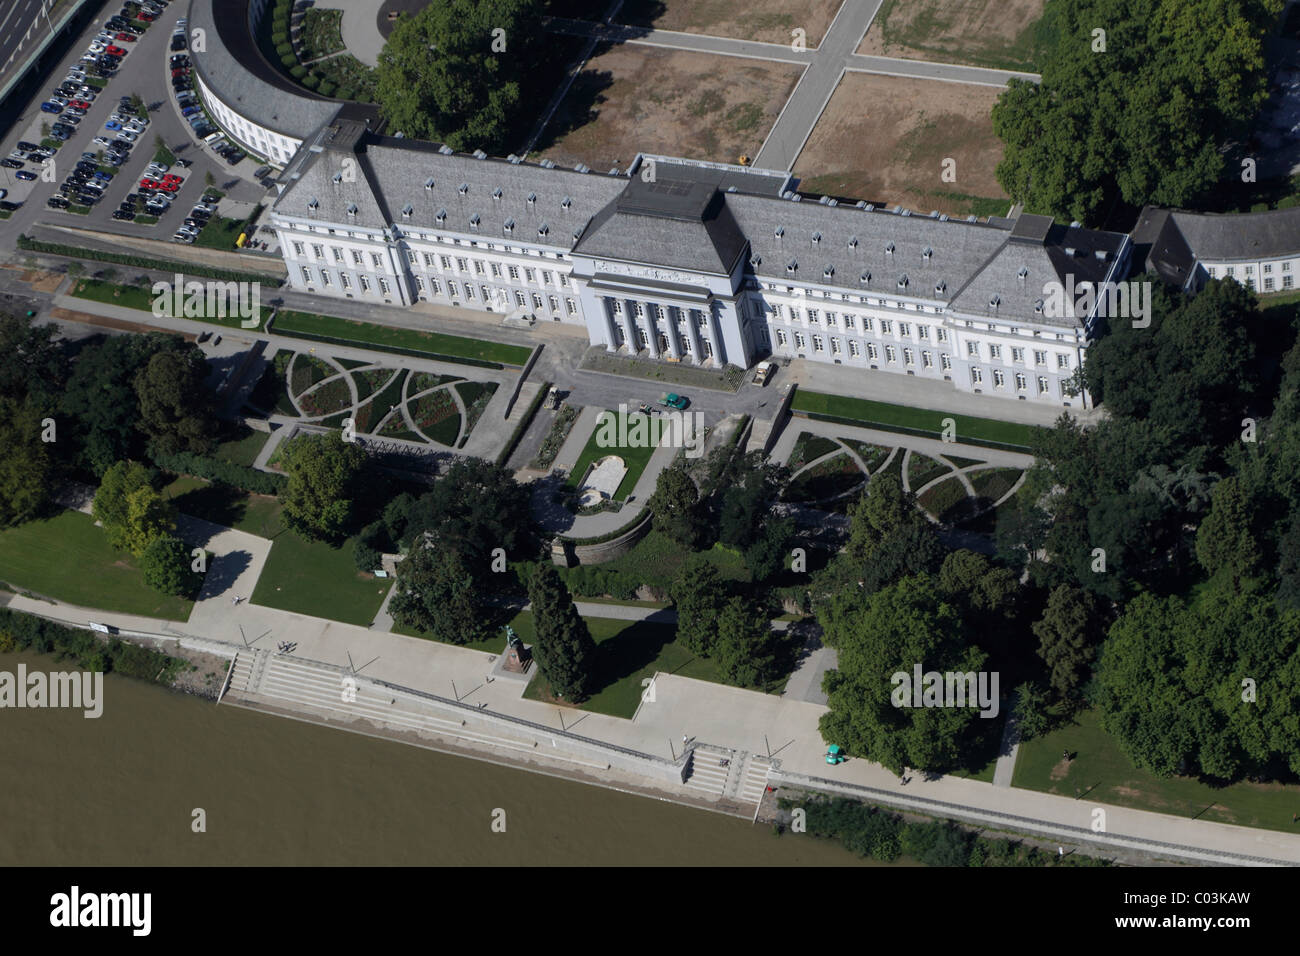 Vue aérienne du site, de la Jardin Spectacle au palais électoral, Koblenz, Rhénanie-Palatinat, Allemagne, Europe Banque D'Images